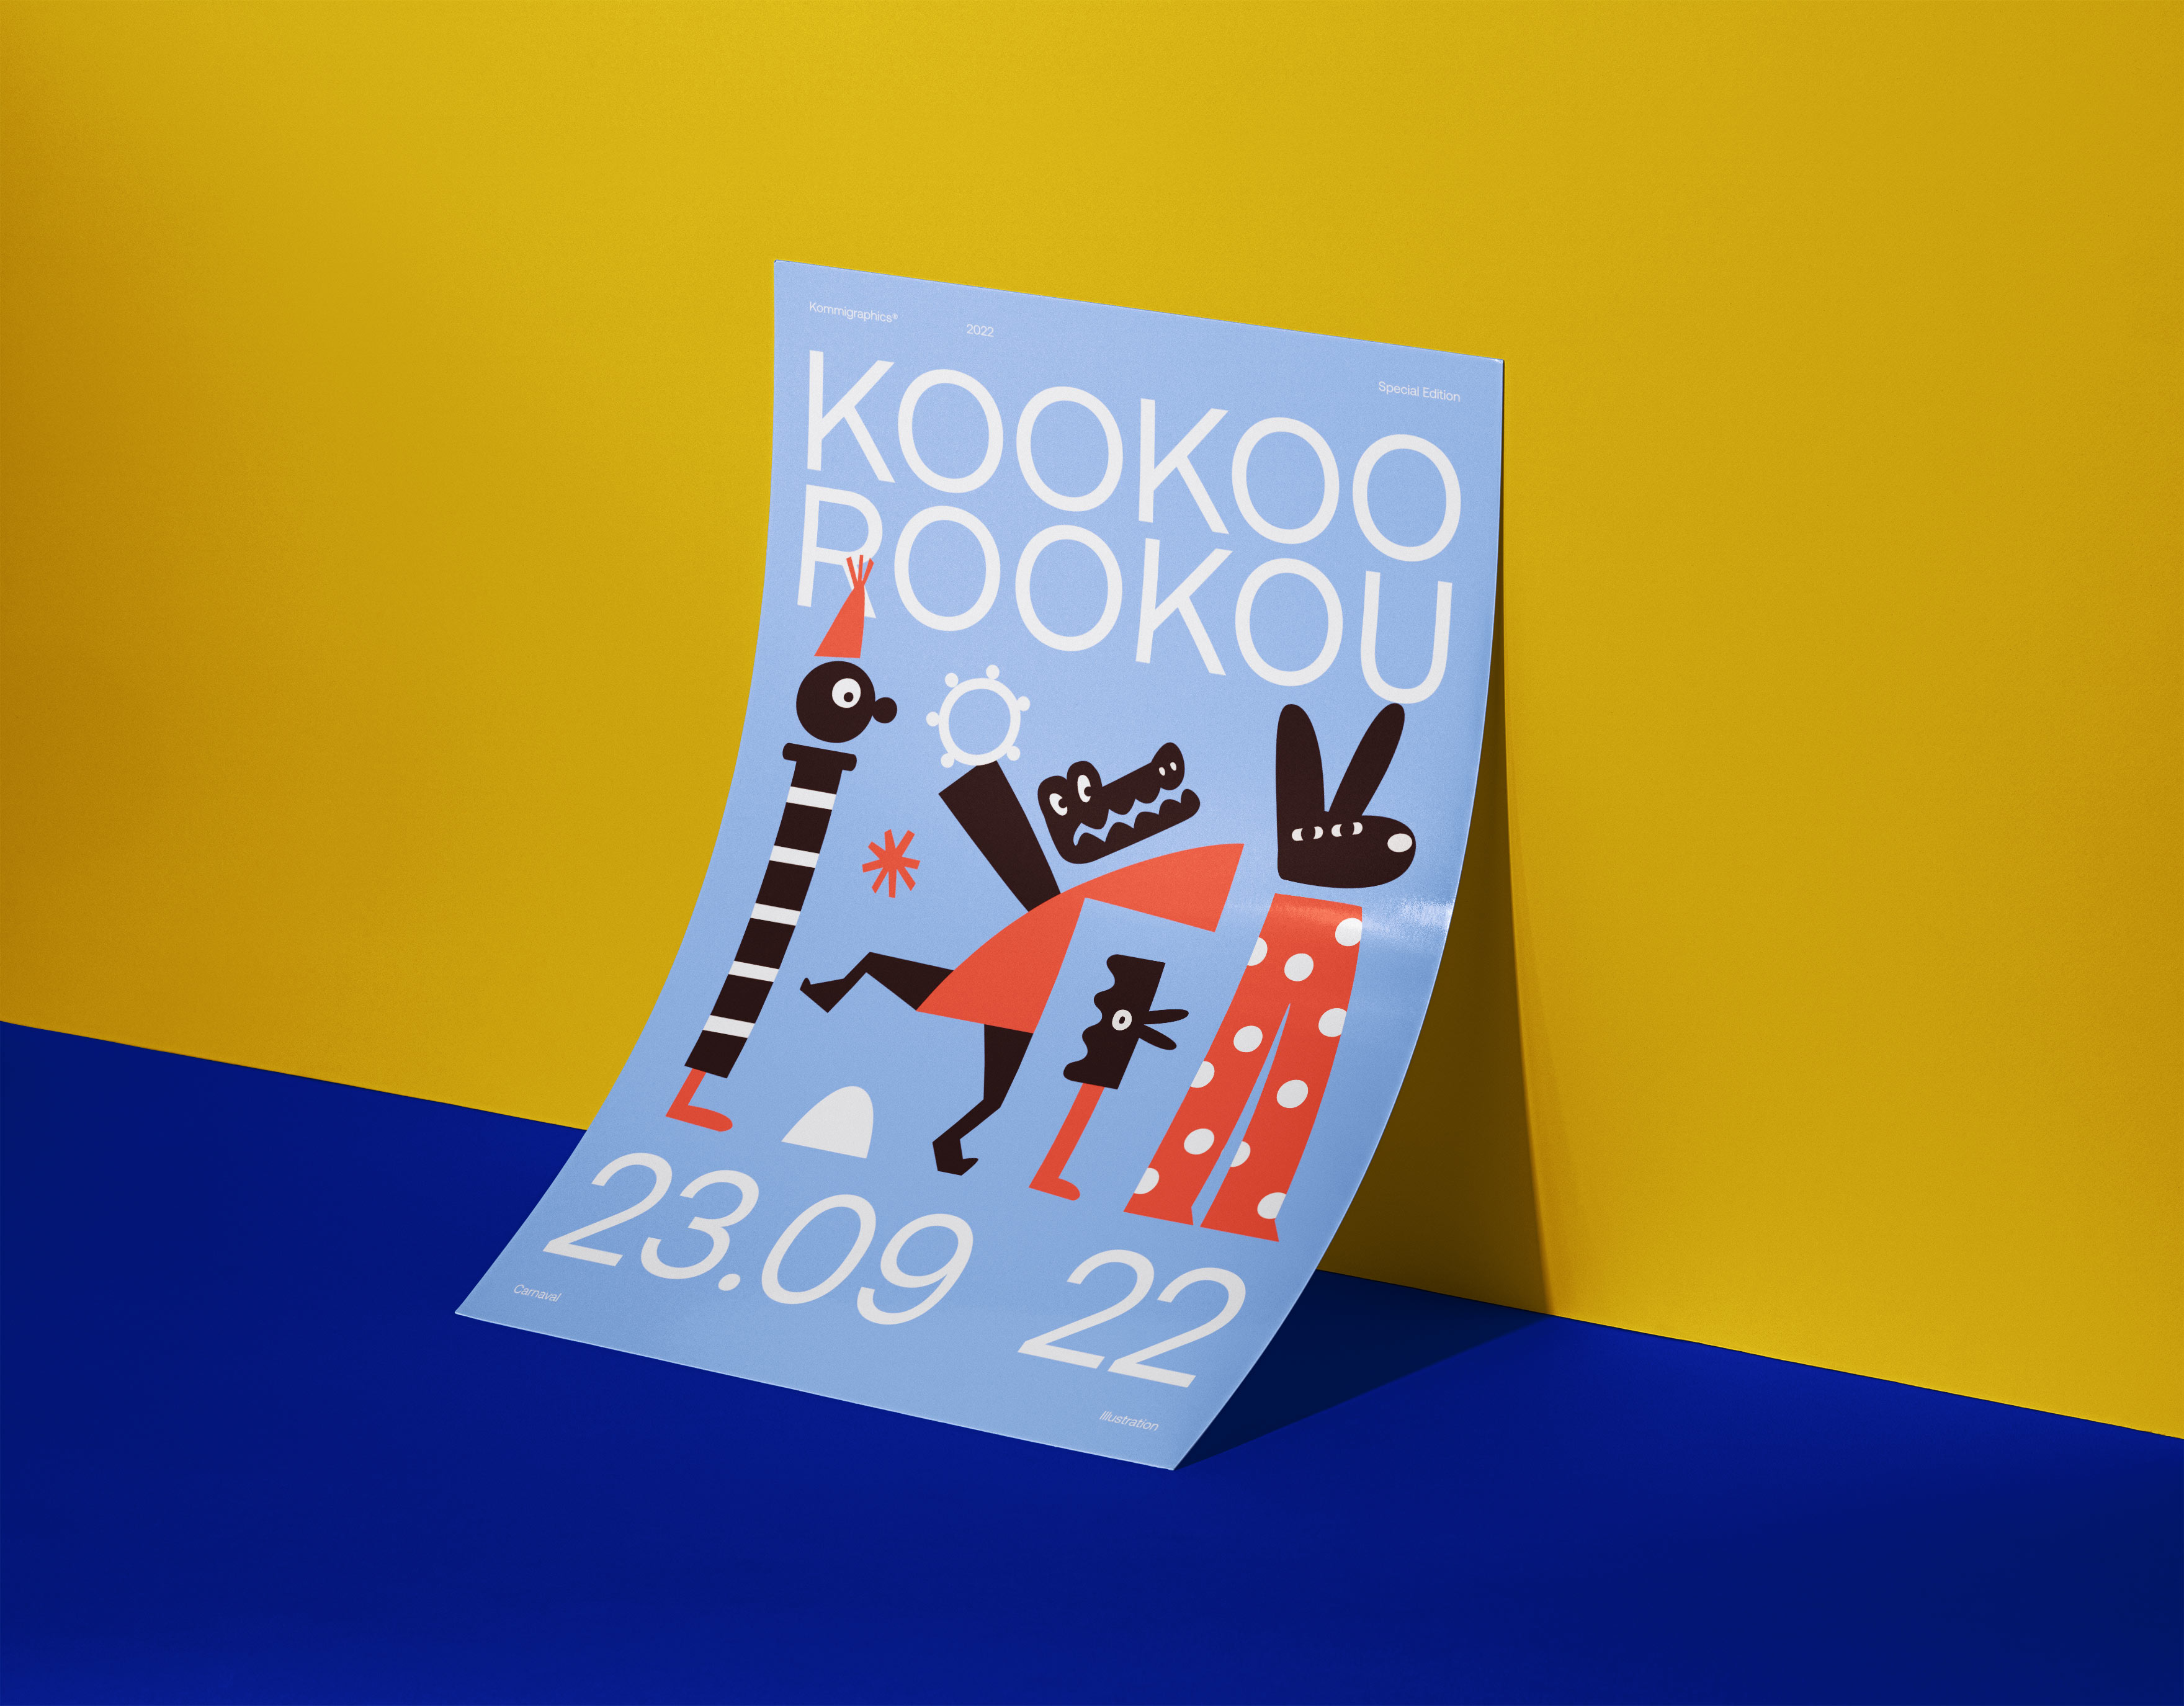 kookoorookou branding printer poster kommigraphics